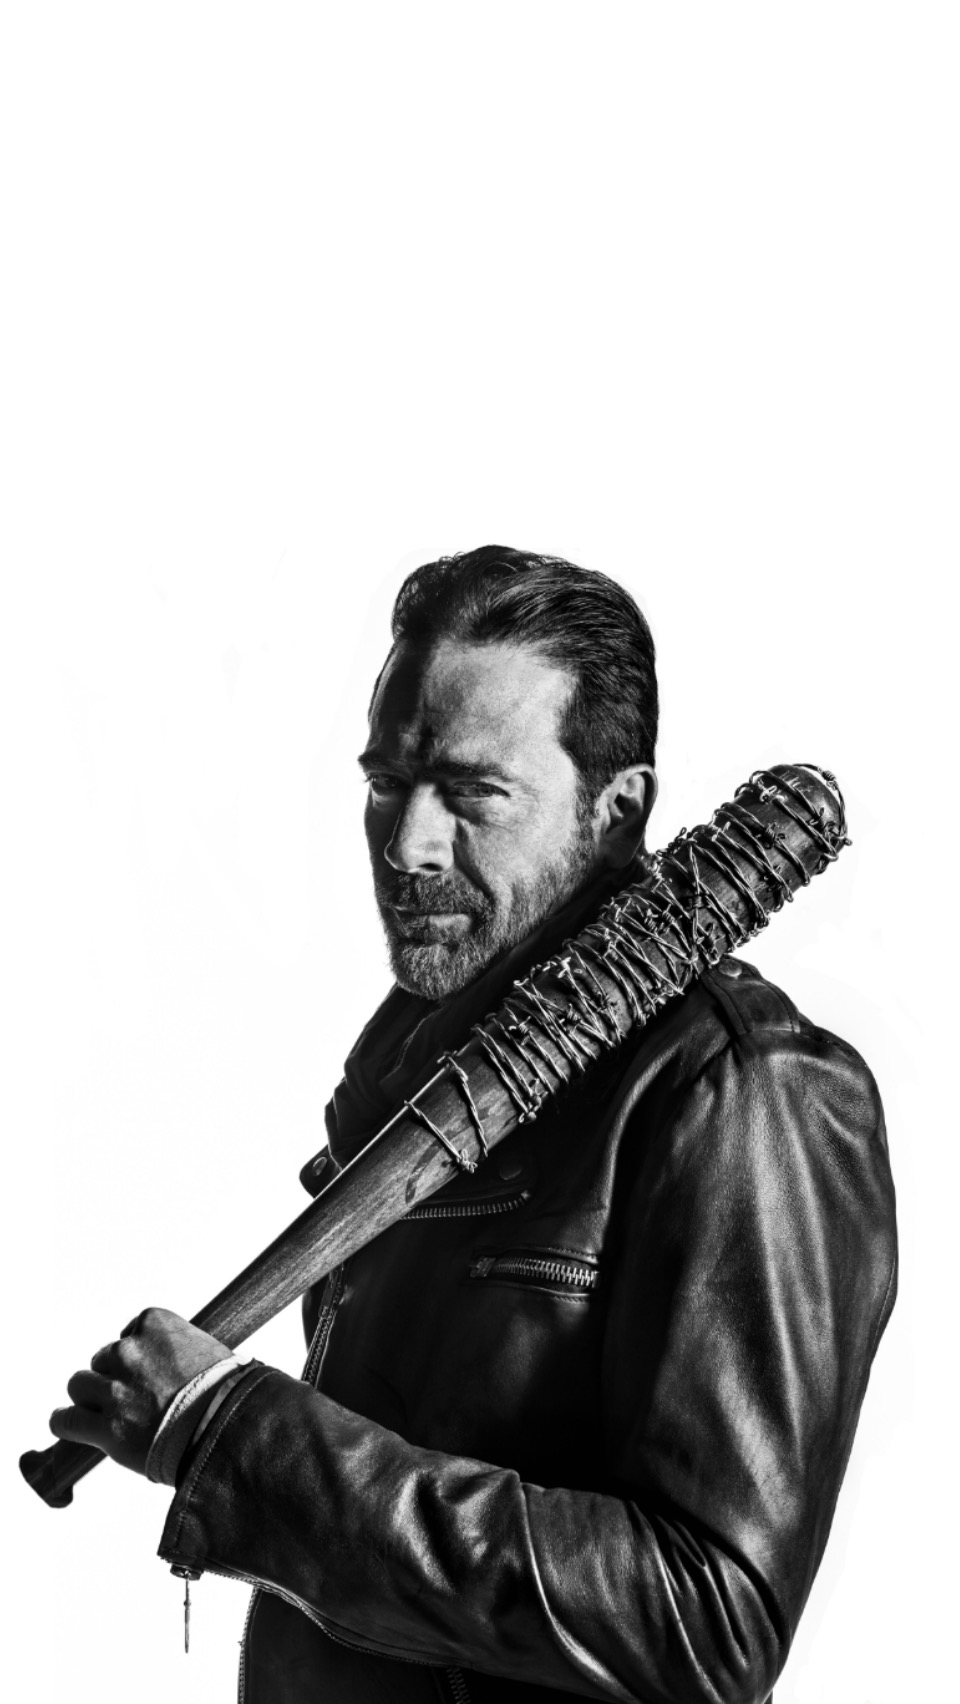 Negan The Walking Dead - HD Wallpaper 